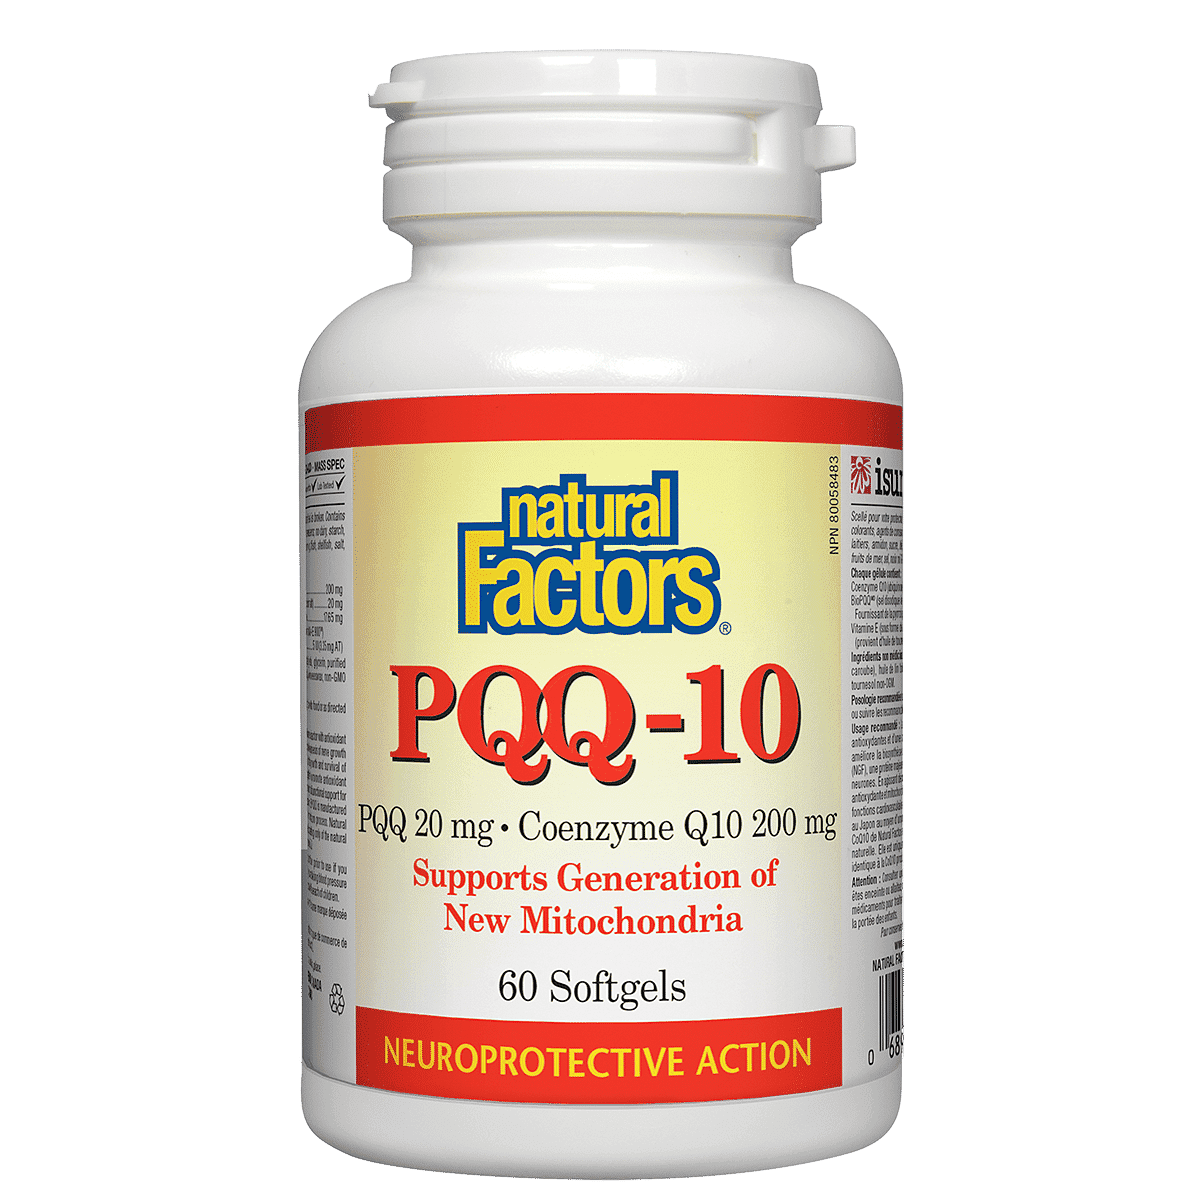 Natural Factors PQQ 20 mg Ã‚Â· Coenzyme Q10 200 mg